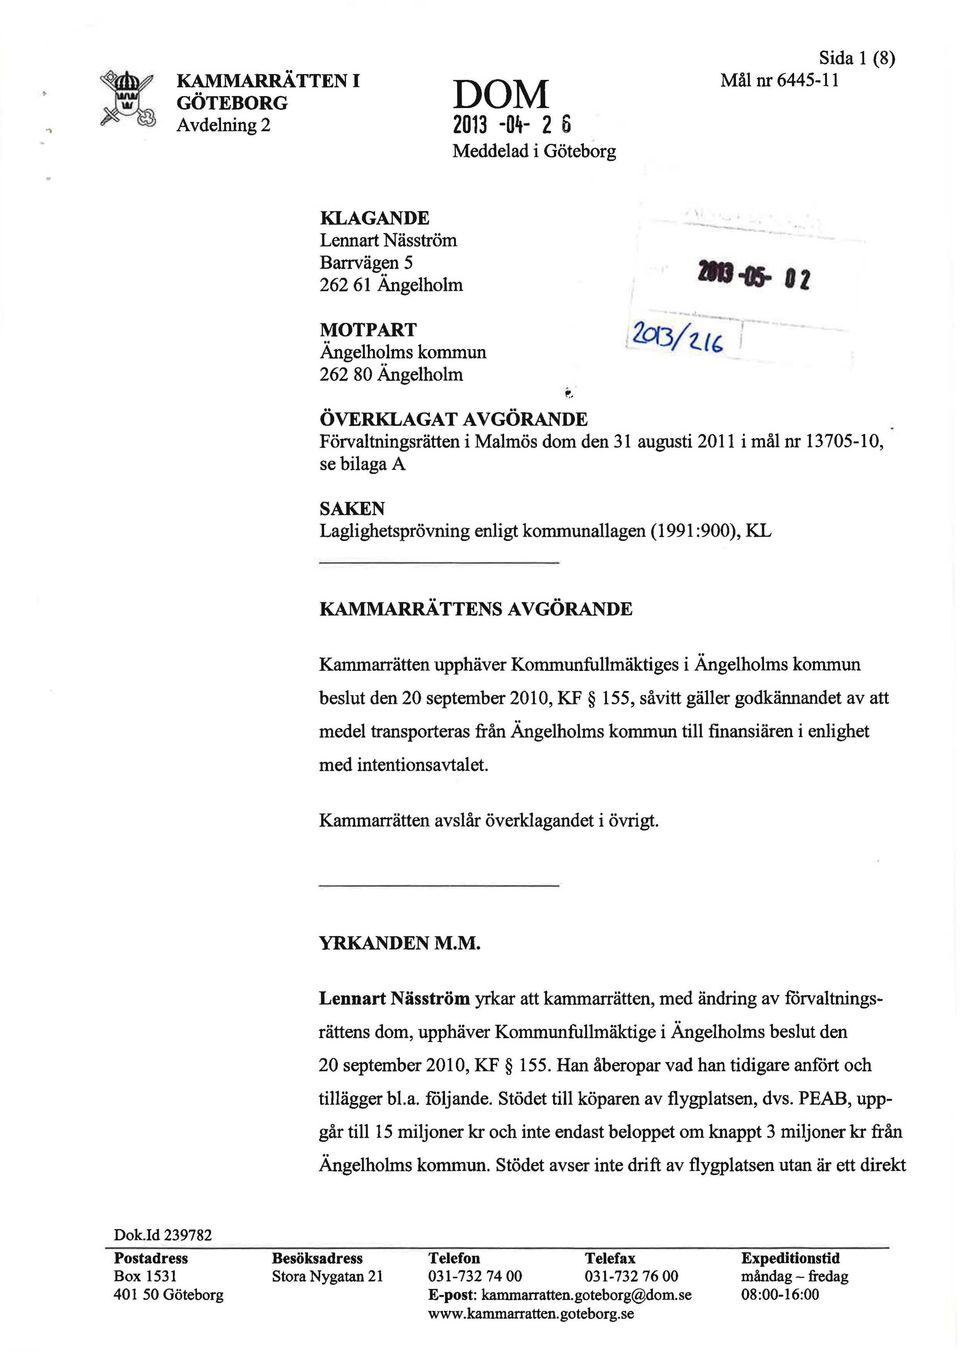 :900), KL KAMMARRÄTTENSAVGÖRANDE Kammarrätten upphäver Kommunfullmäktiges i Ängelholms kommun beslut den 20 september 2010, KF 155, såvitt gäller godkännandet av att medel transporteras från